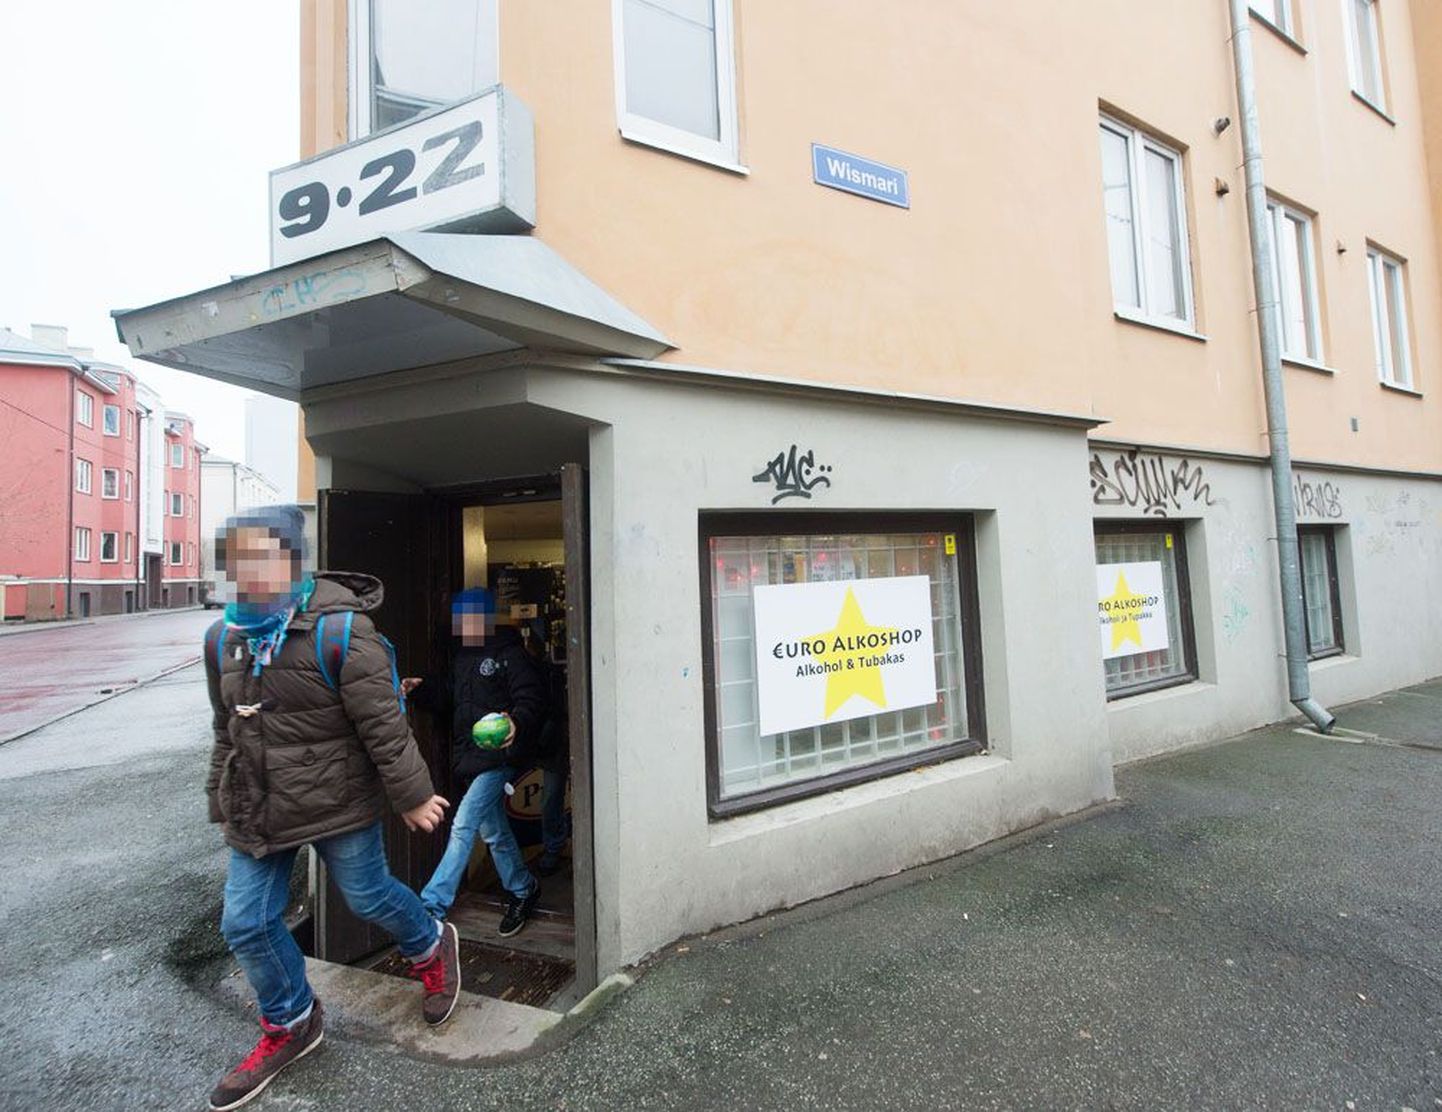 Uus määrus võib lõpetada ka Wismari tänaval ühe elumaja keldris asuva Euro Alkoshopi tegevuse, sest kauplusel võib nõutavaid ruutmeetreid väheks jääda.